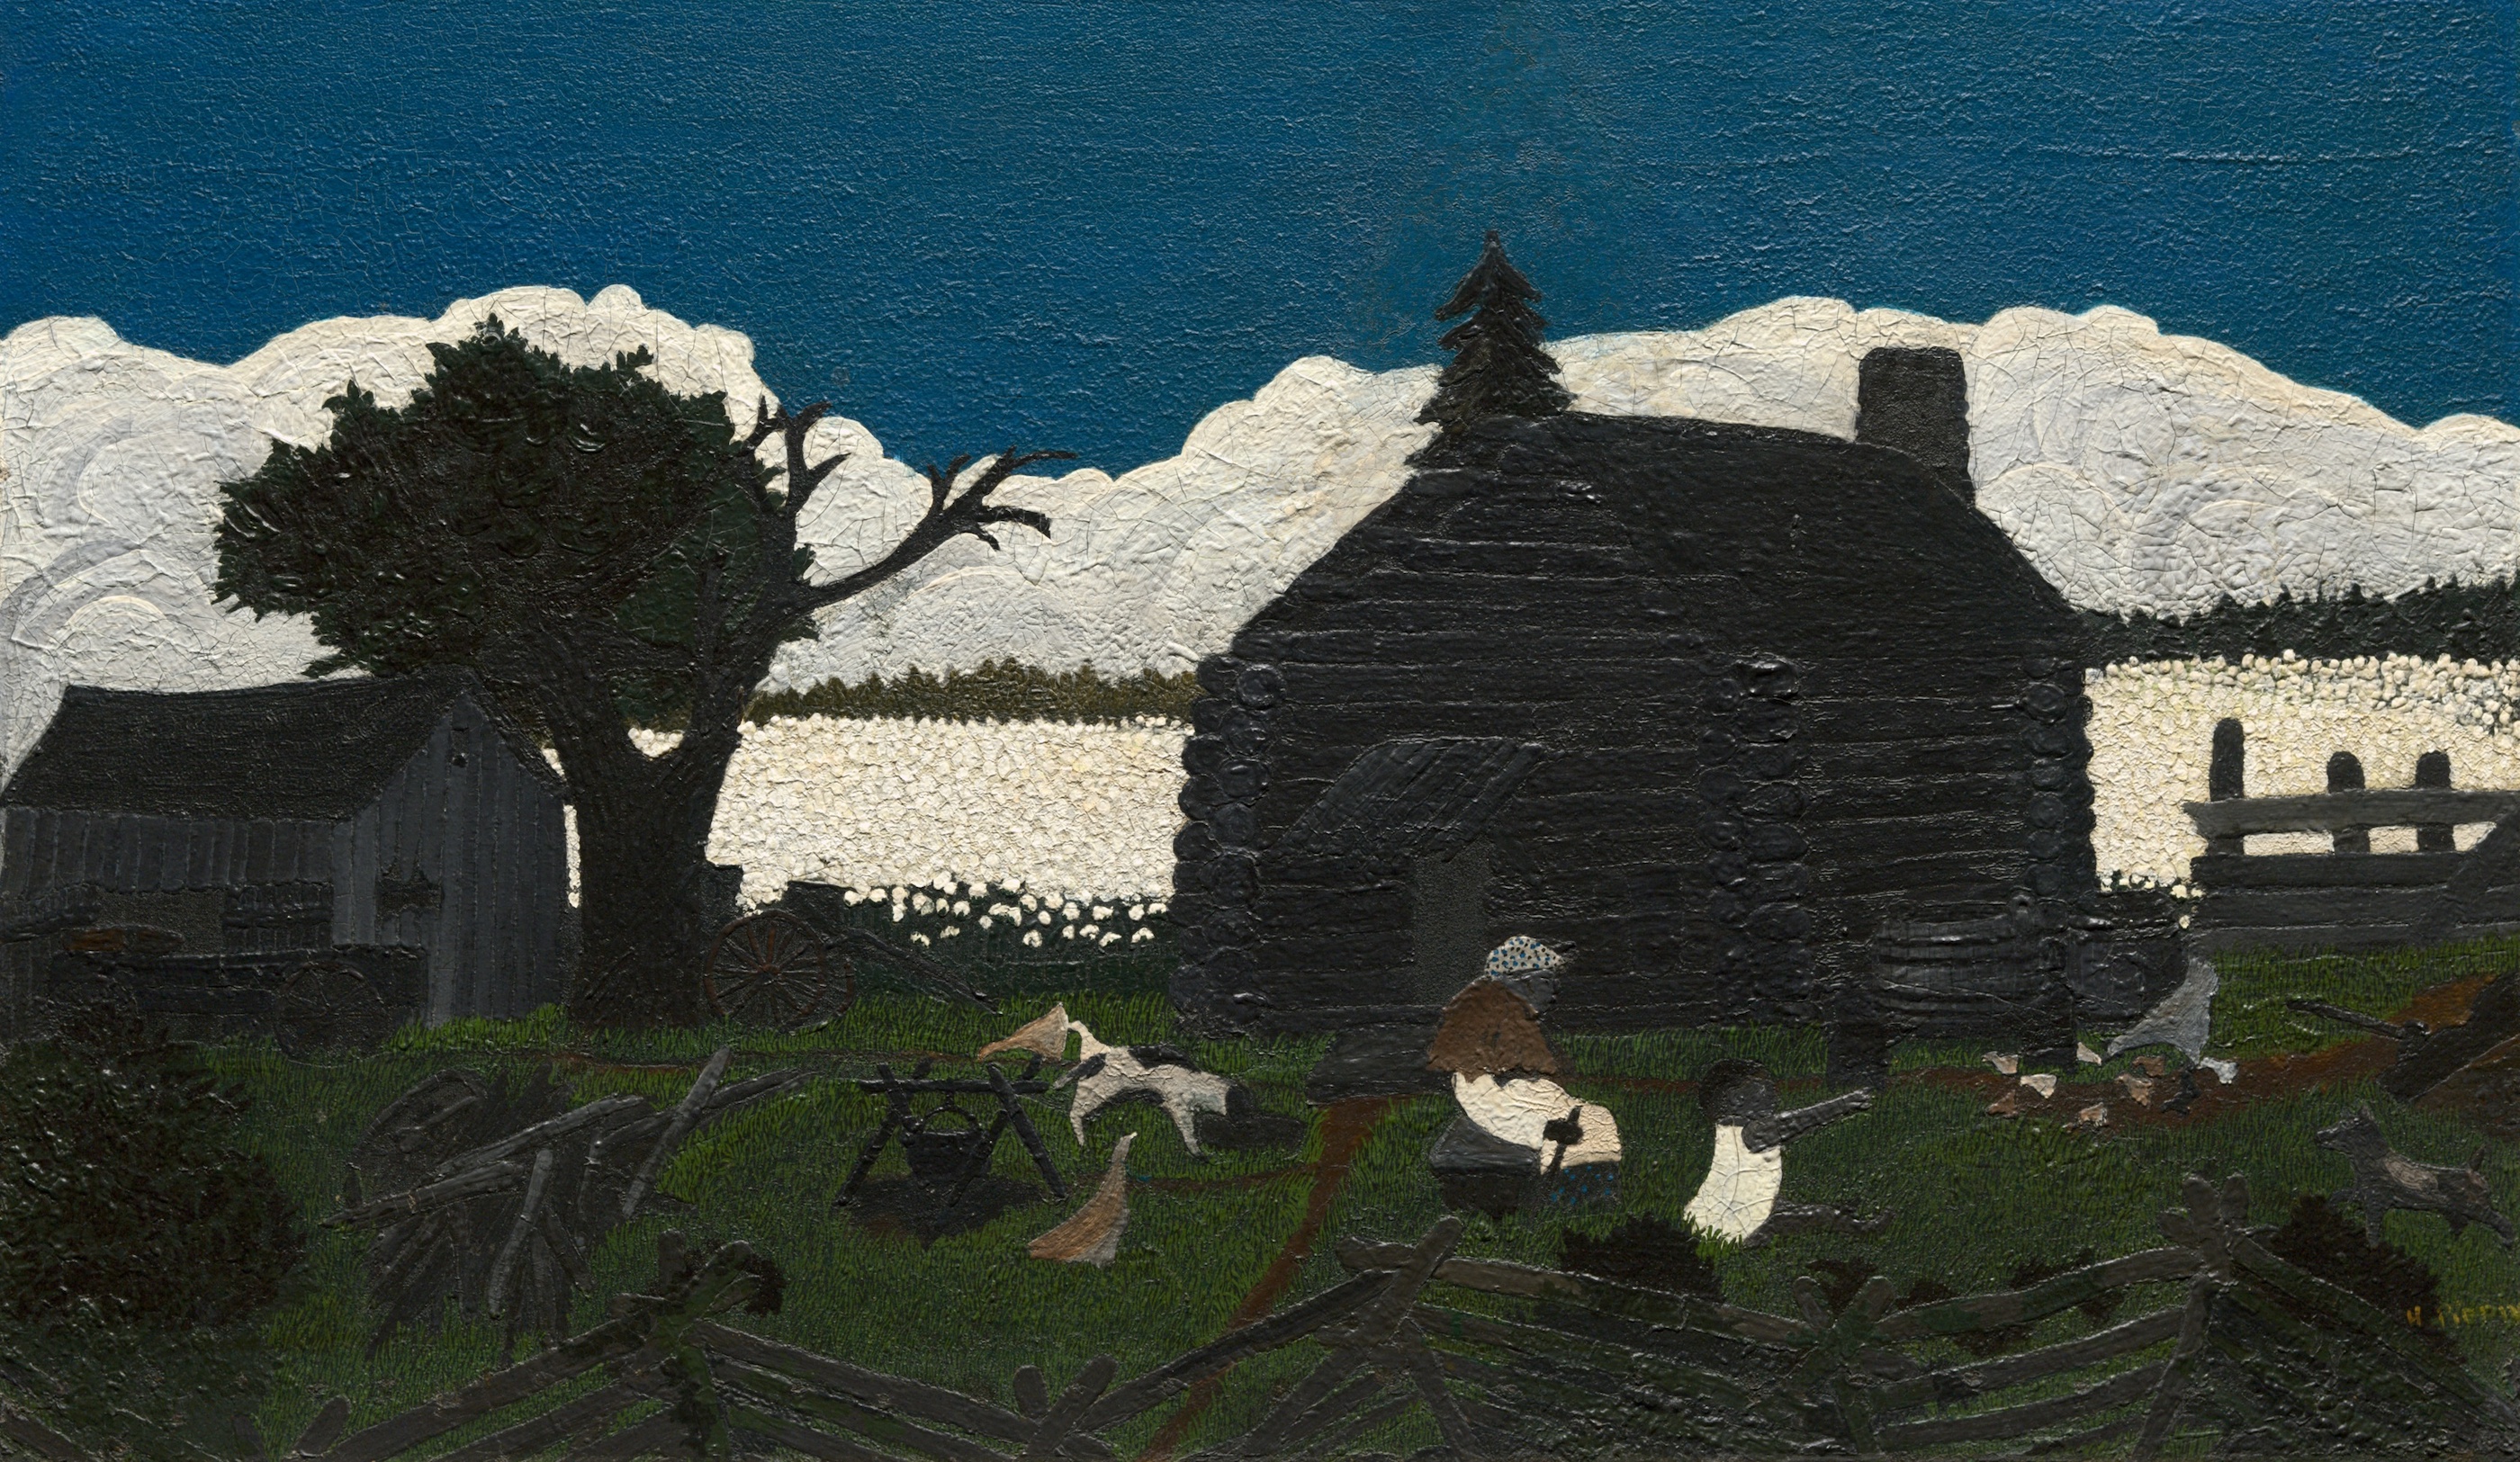 綿畑の小屋 by Horace Pippin - 1931〜1937年頃 - 51 × 85 cm 